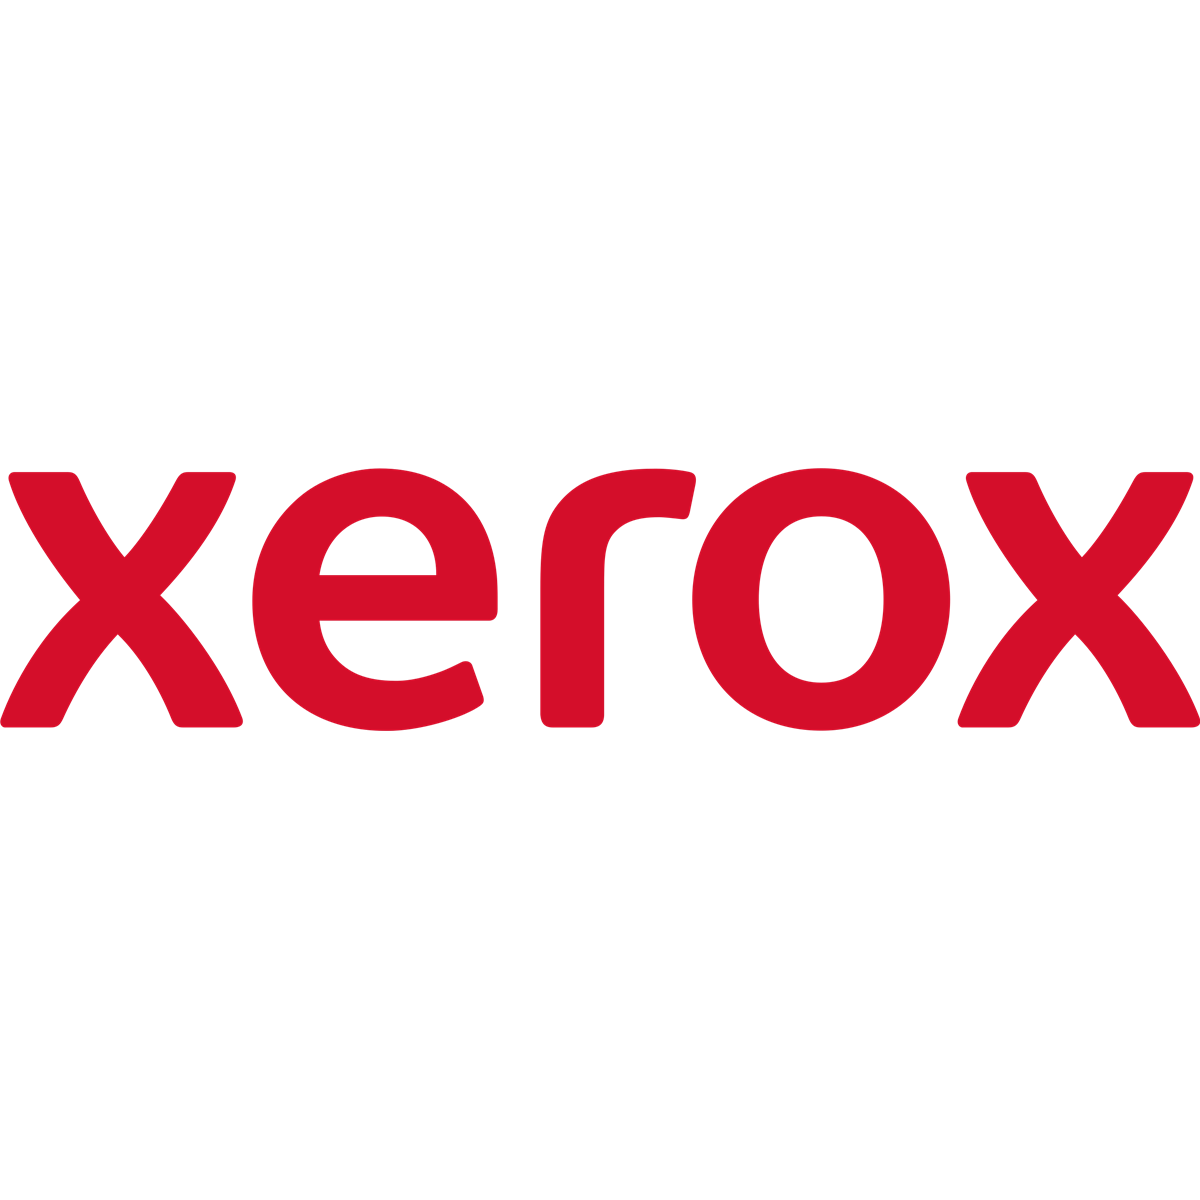 Xerox IBT BELT CLEANER - Xerox - 160000 sheets - Xerox Phaser 7800 - China - 130 mm - 535 mm